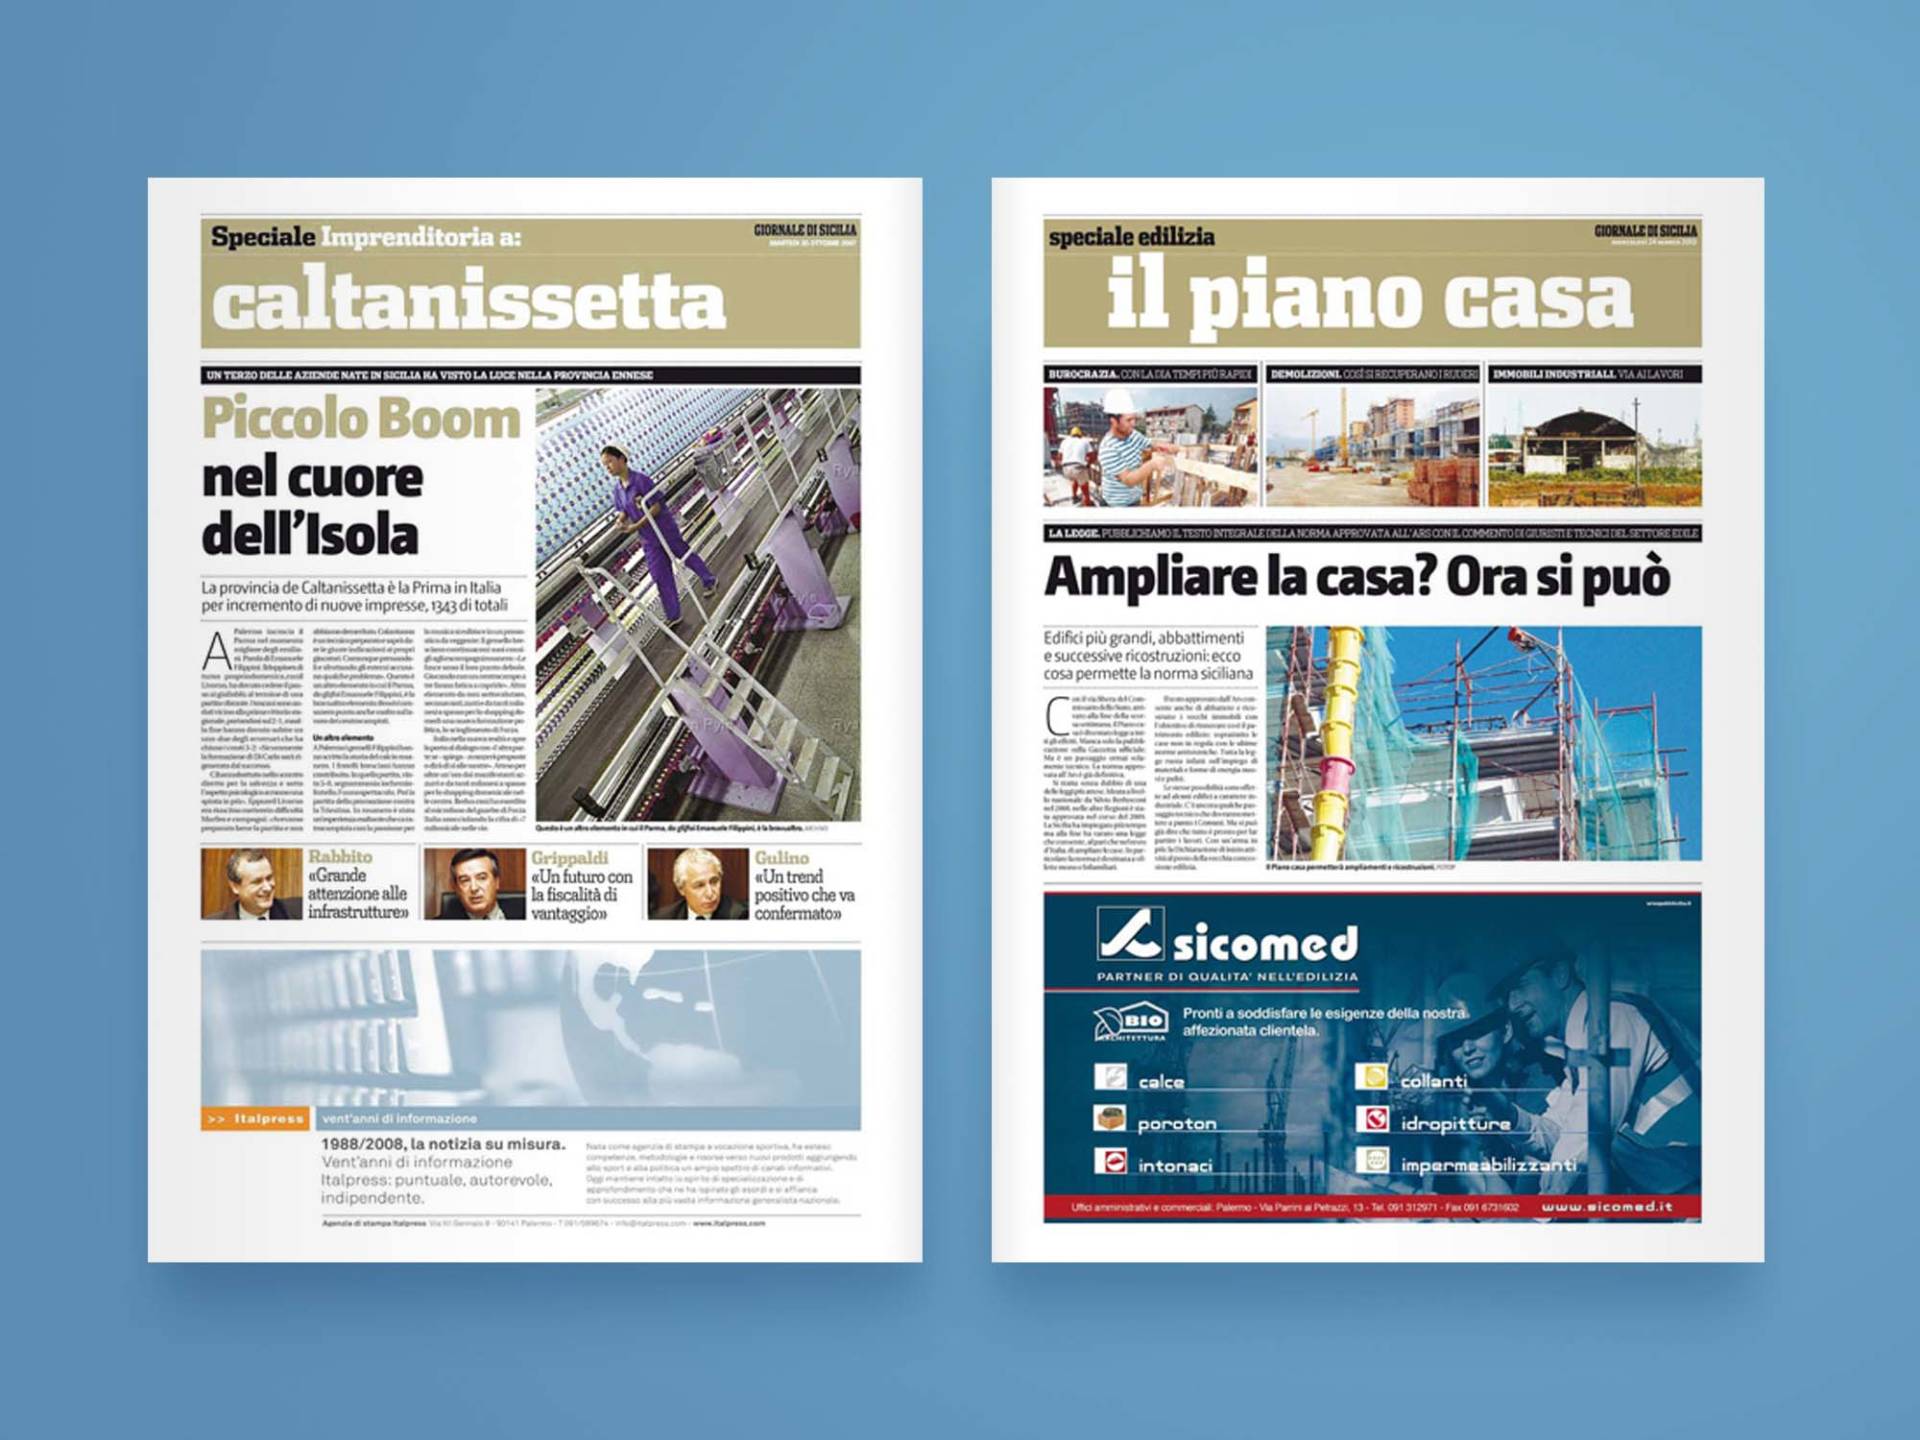 Giornale_di_Sicilia_Supplementi_03_Wenceslau_News_Design